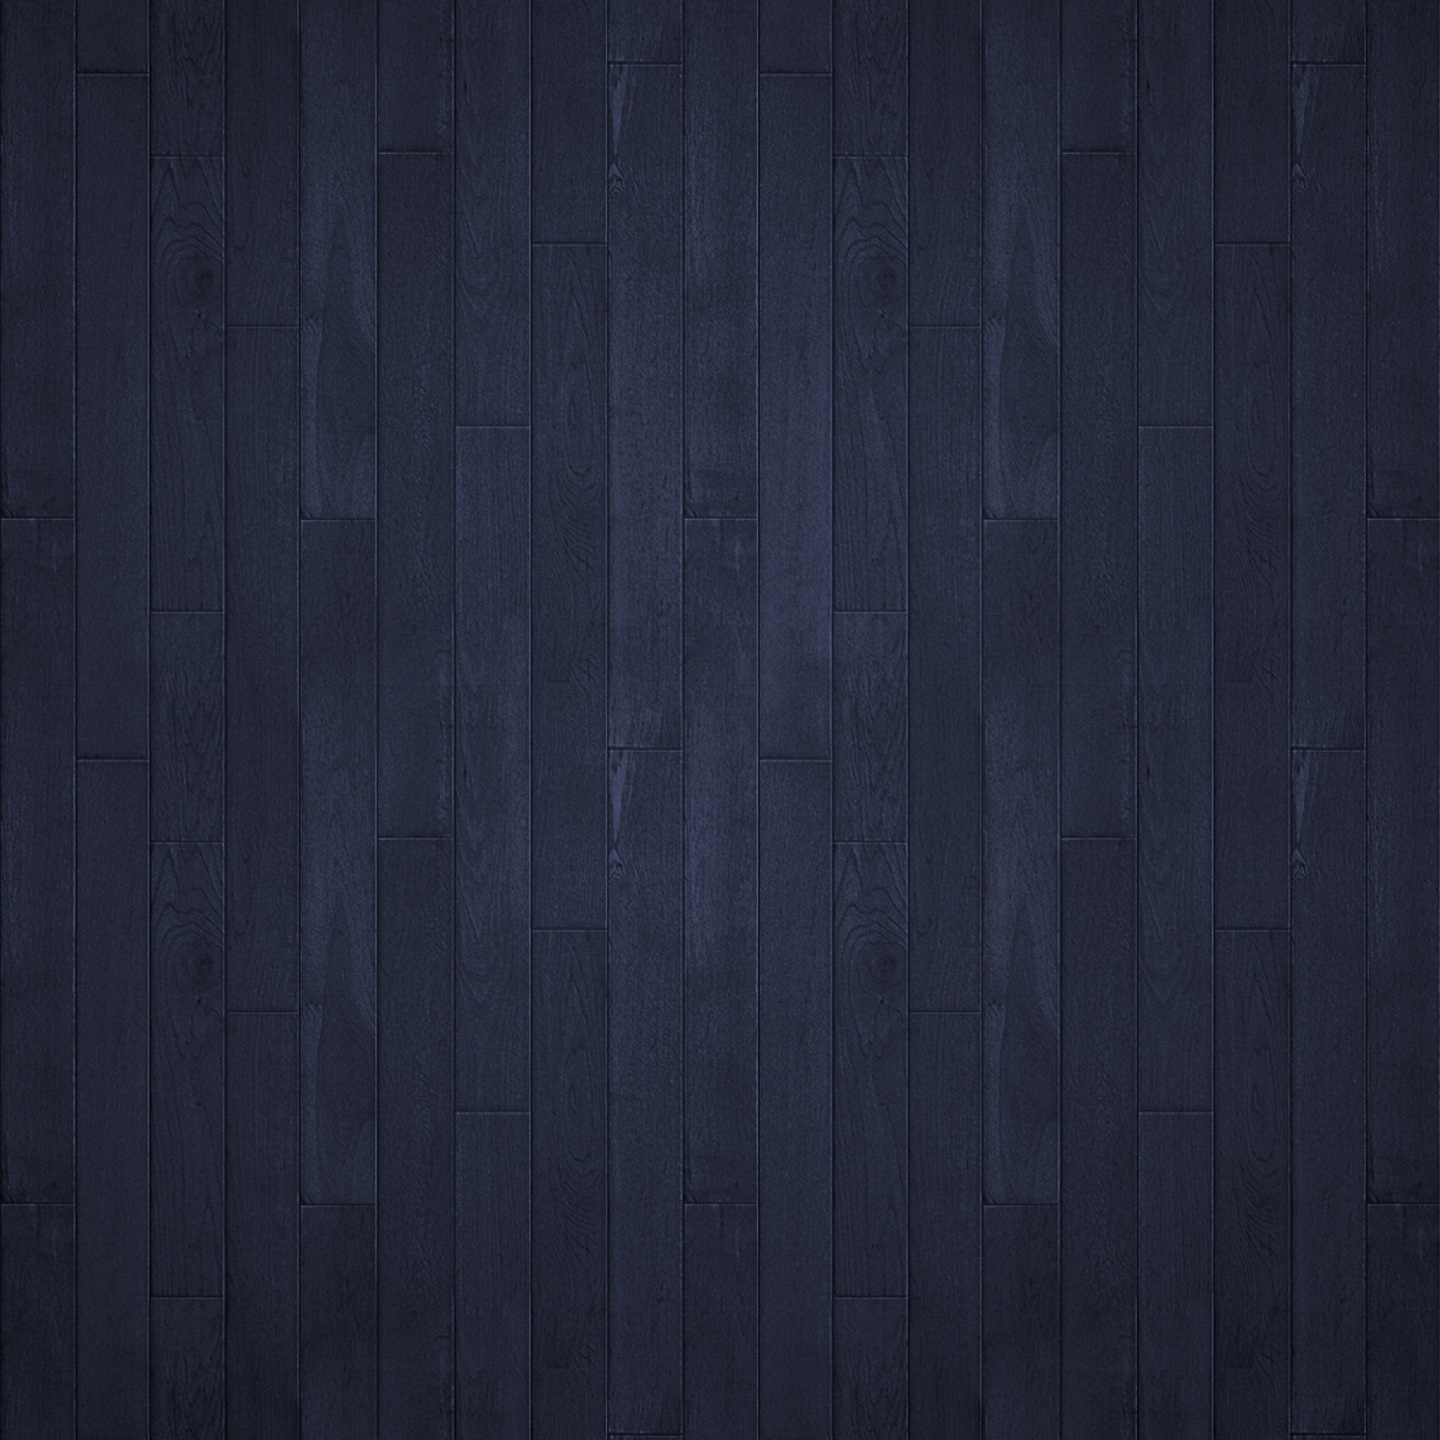 Ipad Retina Wallpaper Mini Wallpaper for iPad Photo Shared By Bat 3